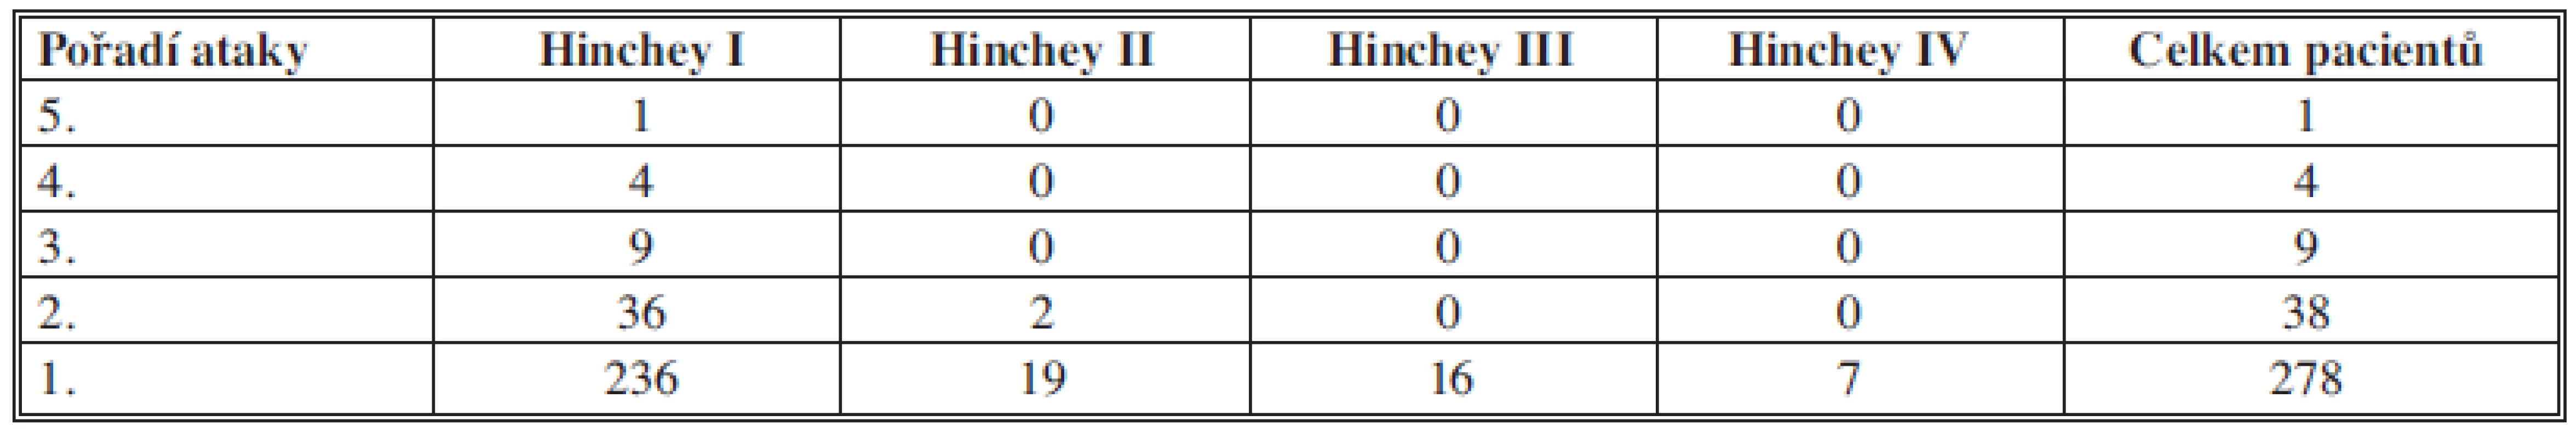 Počty pacientů rozdělených dle počtu atak a dle komplikací divertikulitidy
Tab. 2: Patients divided according to Hinchey and recurrence